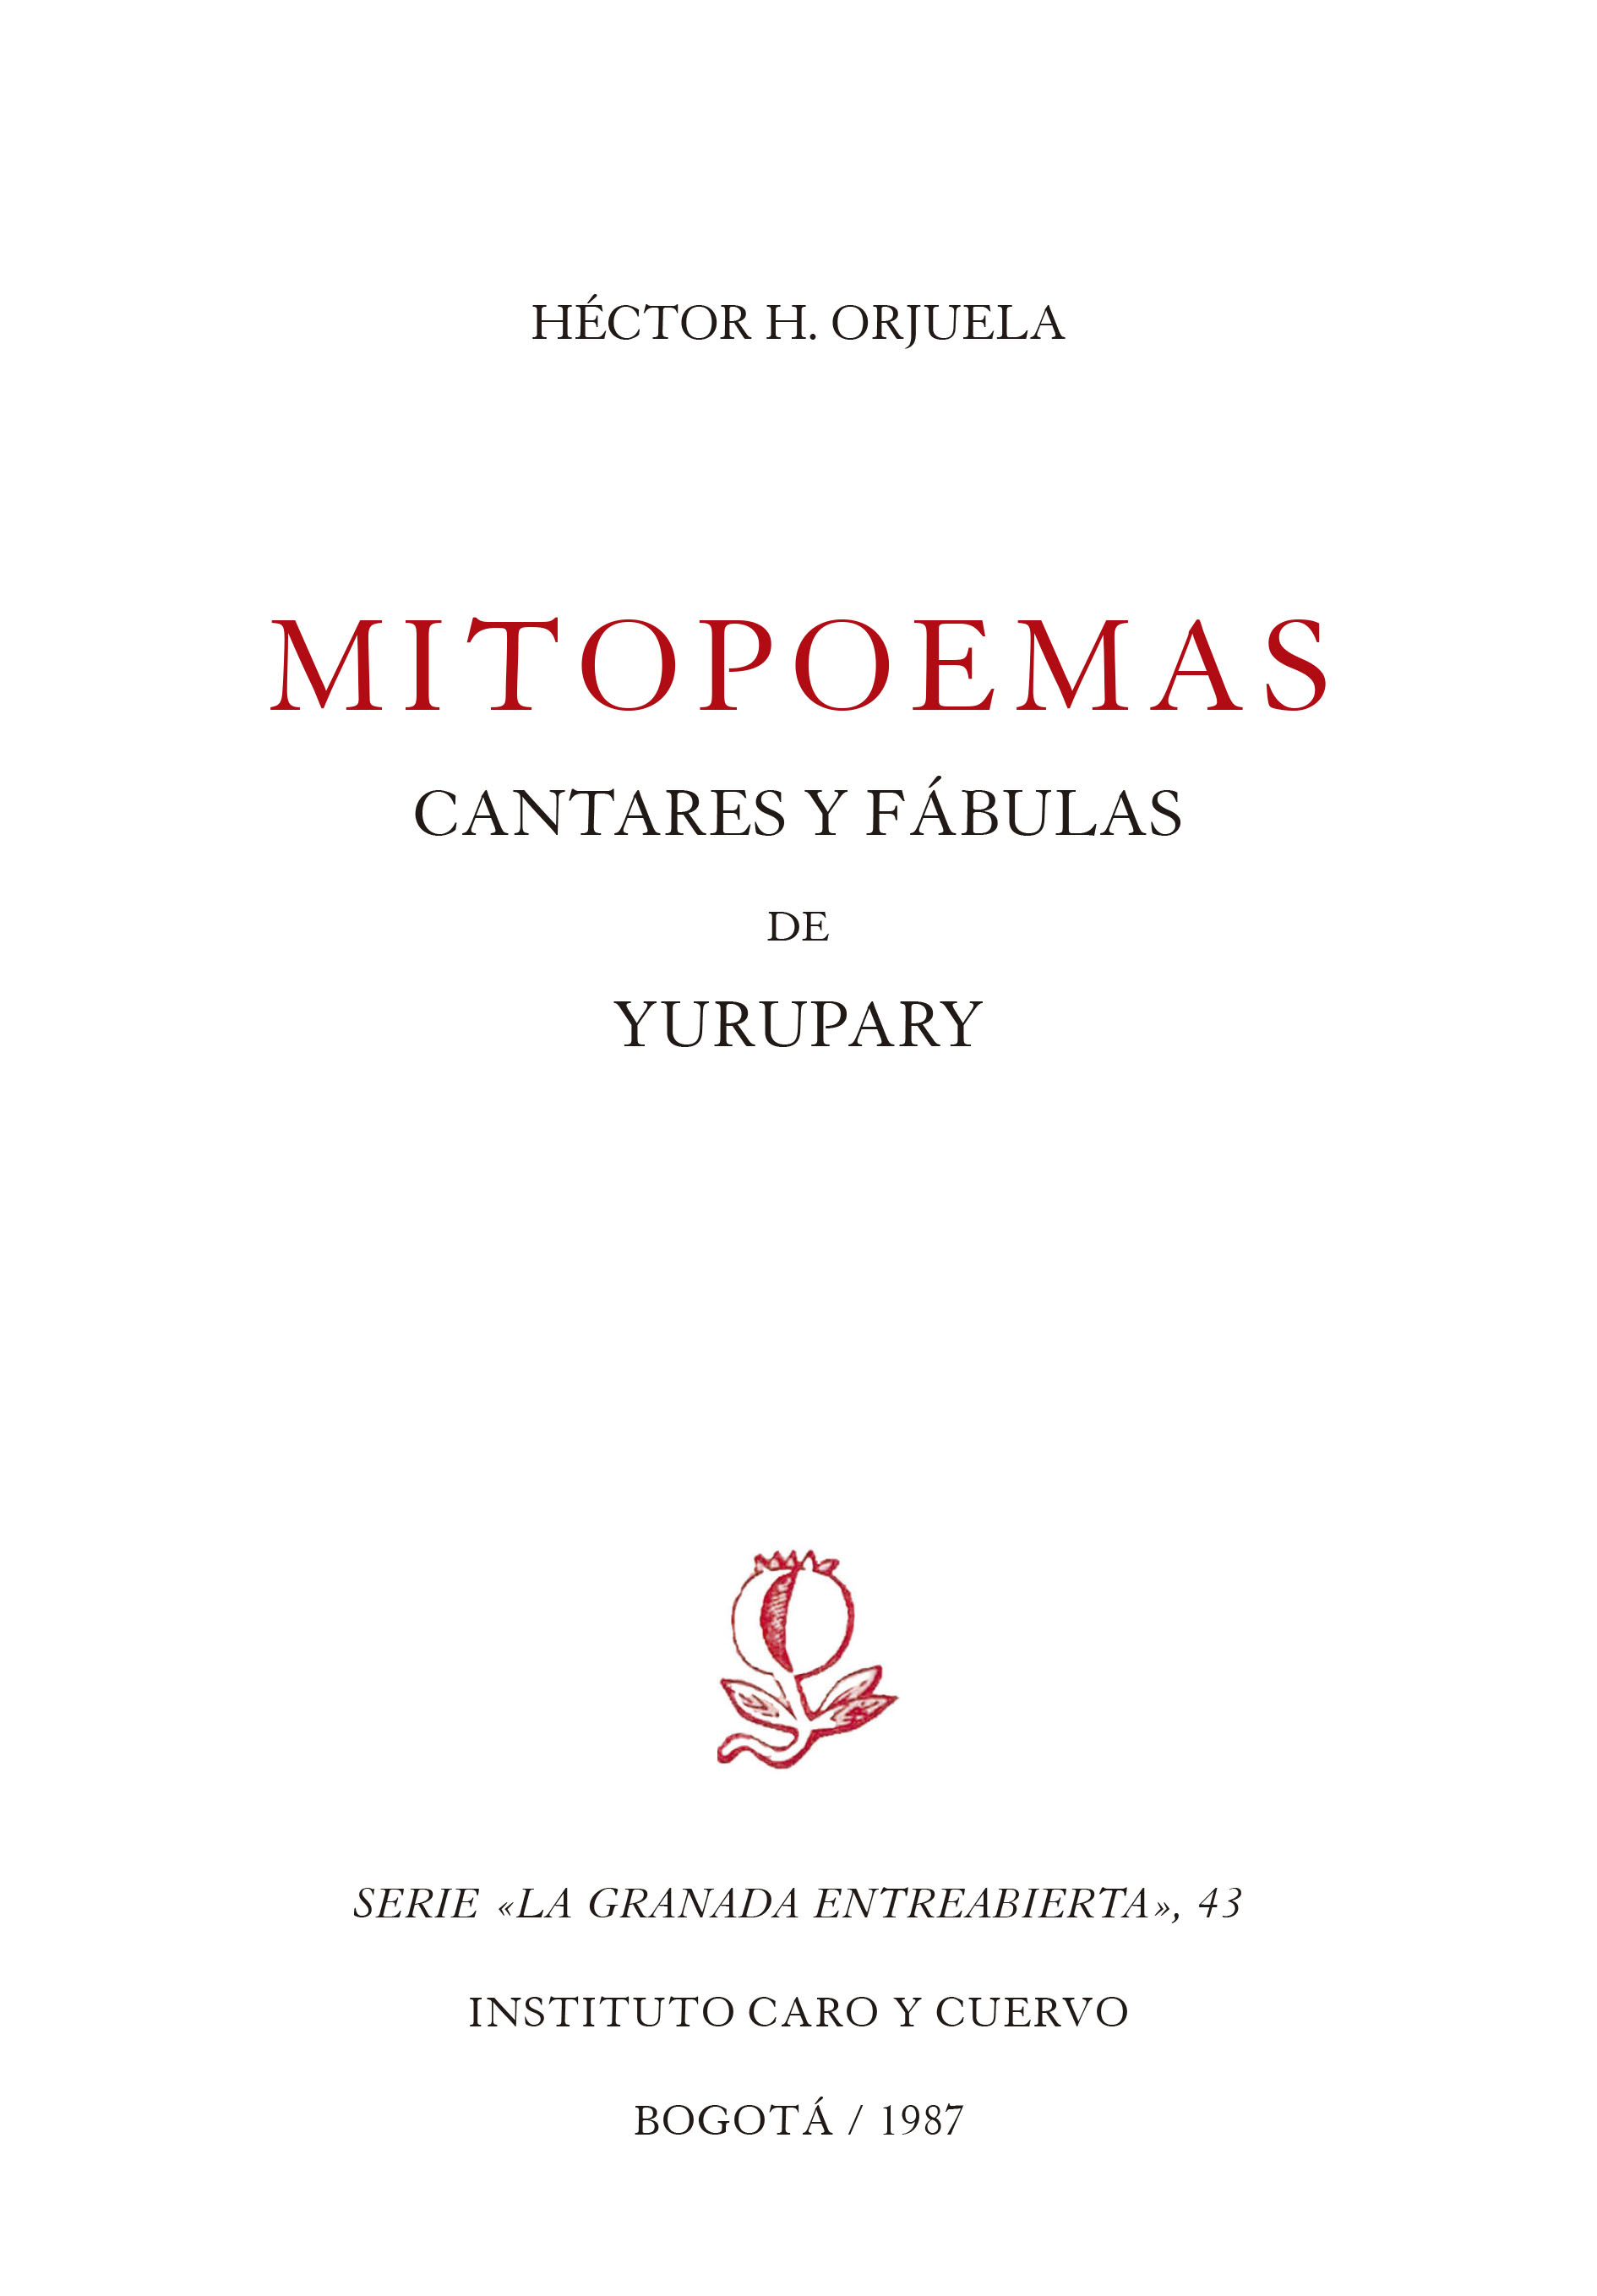 Mitopoemas: cantares y fábulas de Yurupary